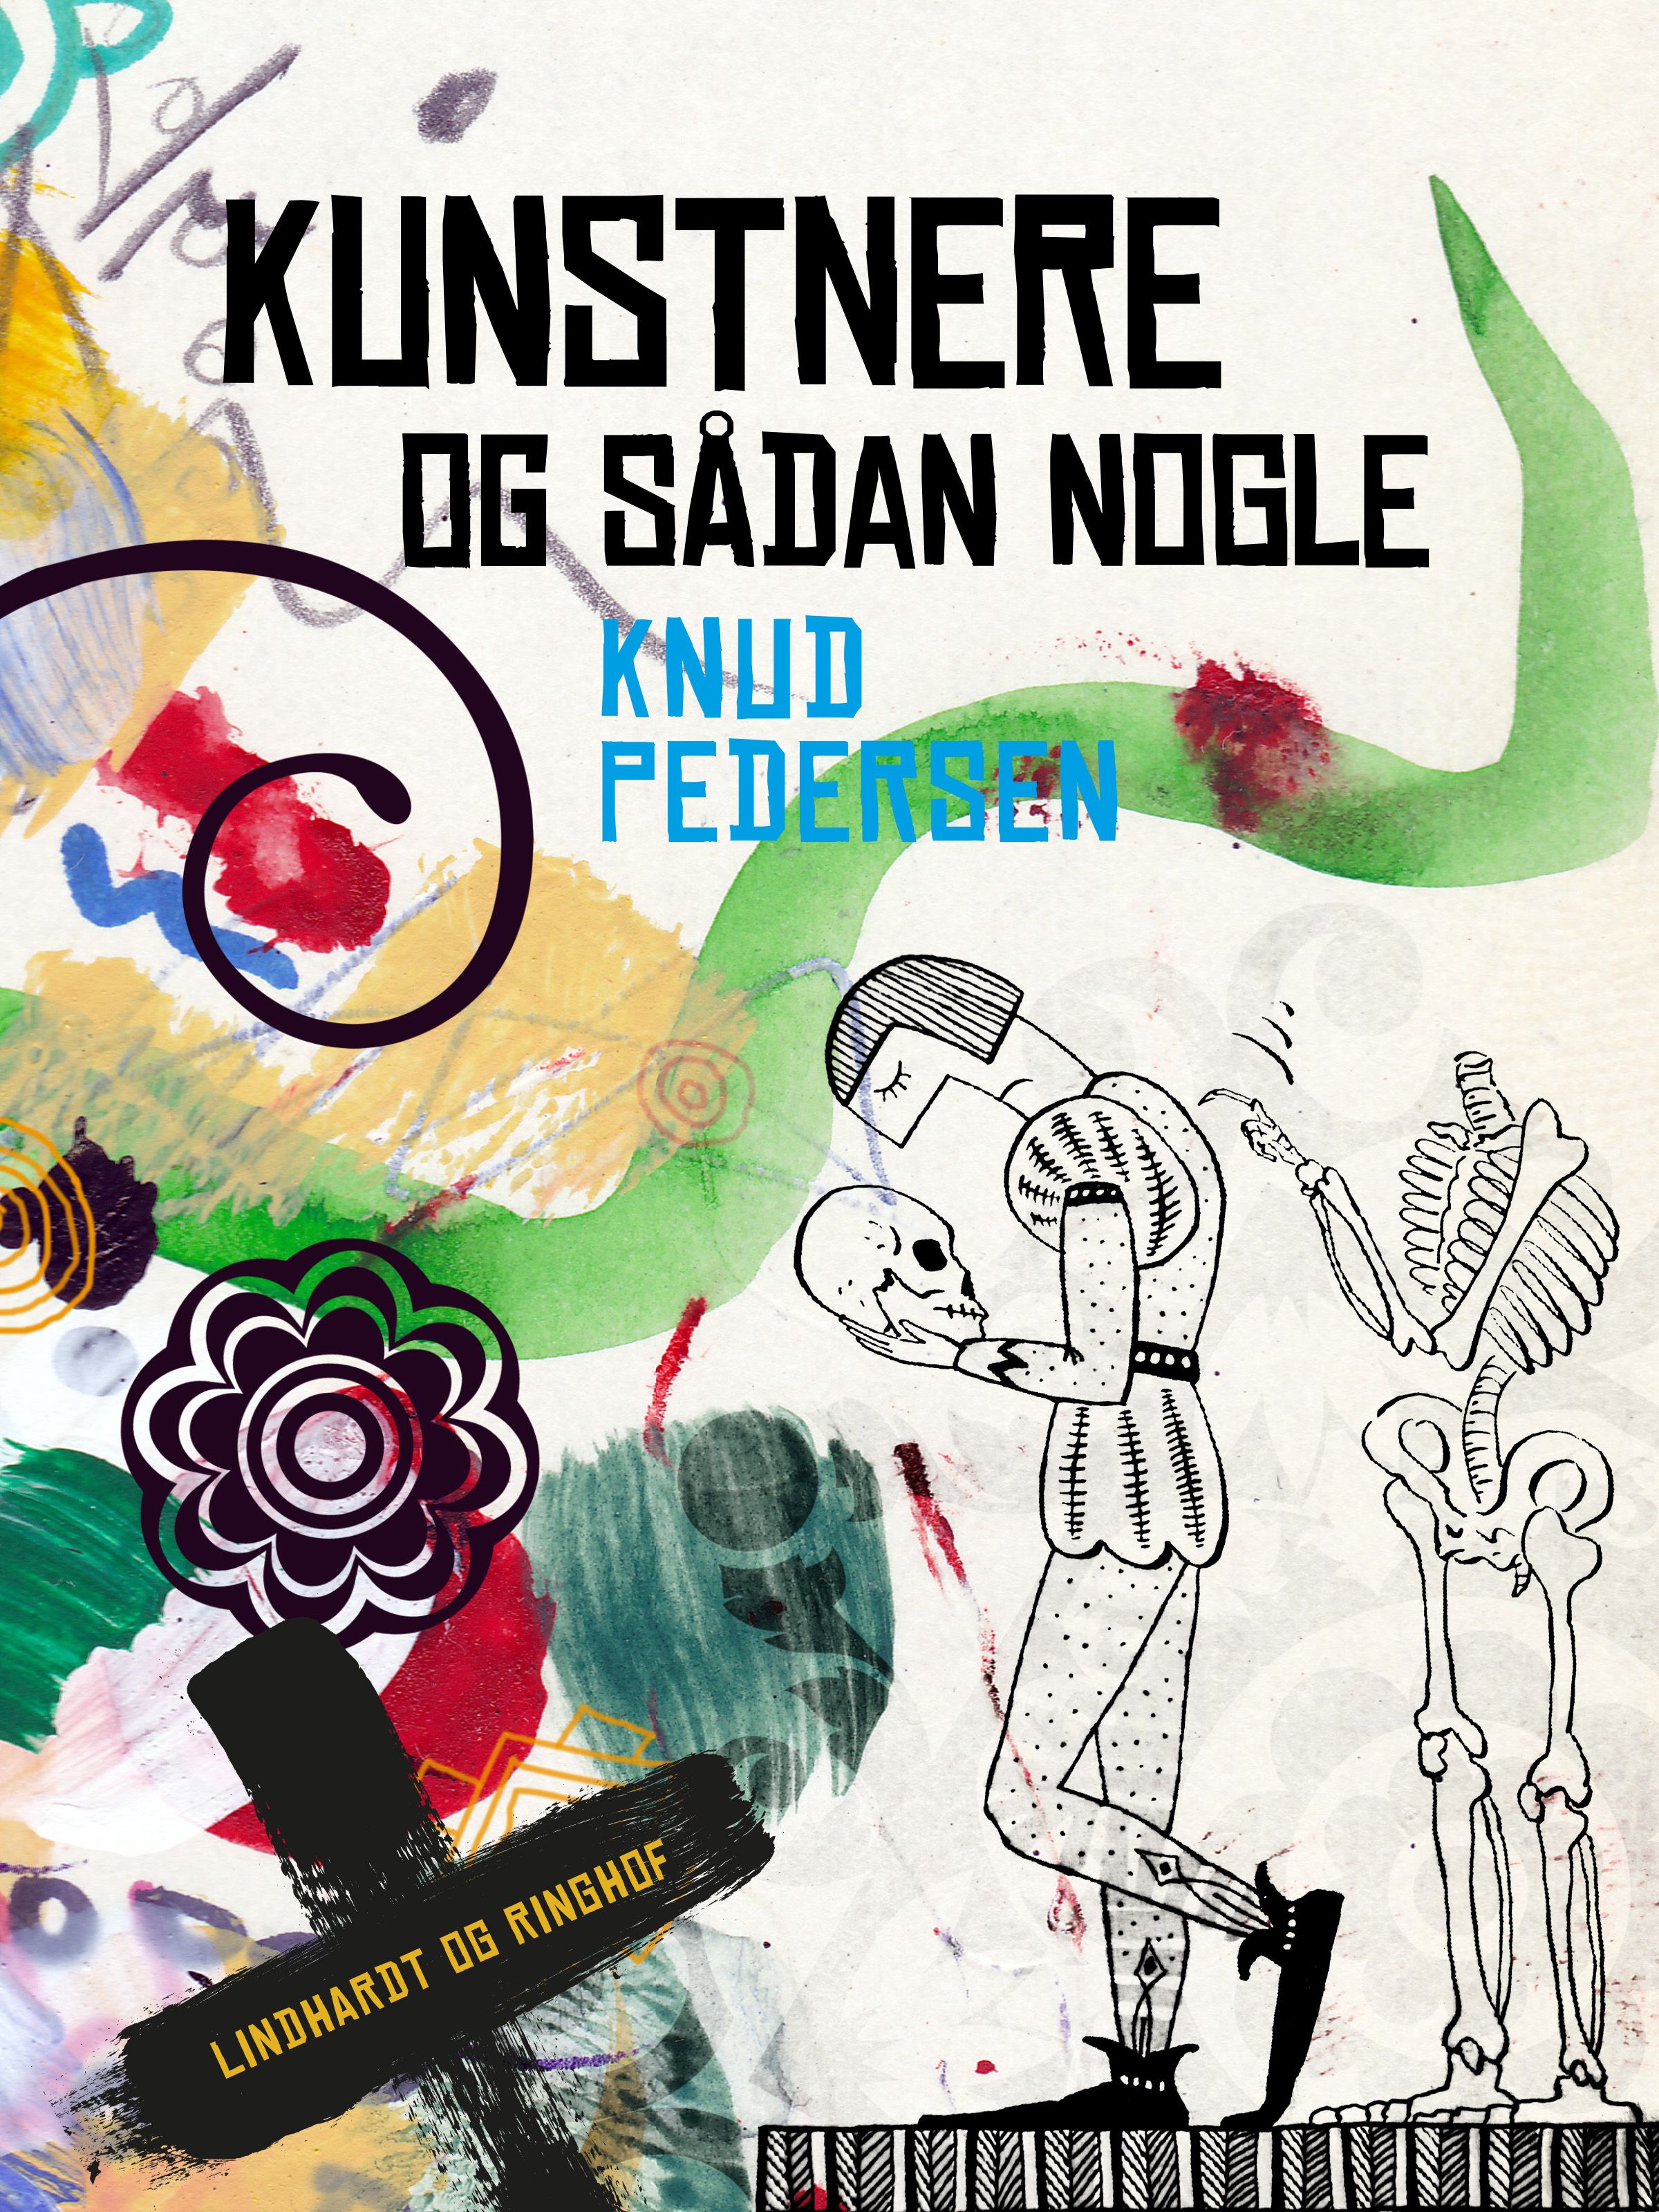 Kunstnere og sådan nogle, e-bok av Knud Pedersen